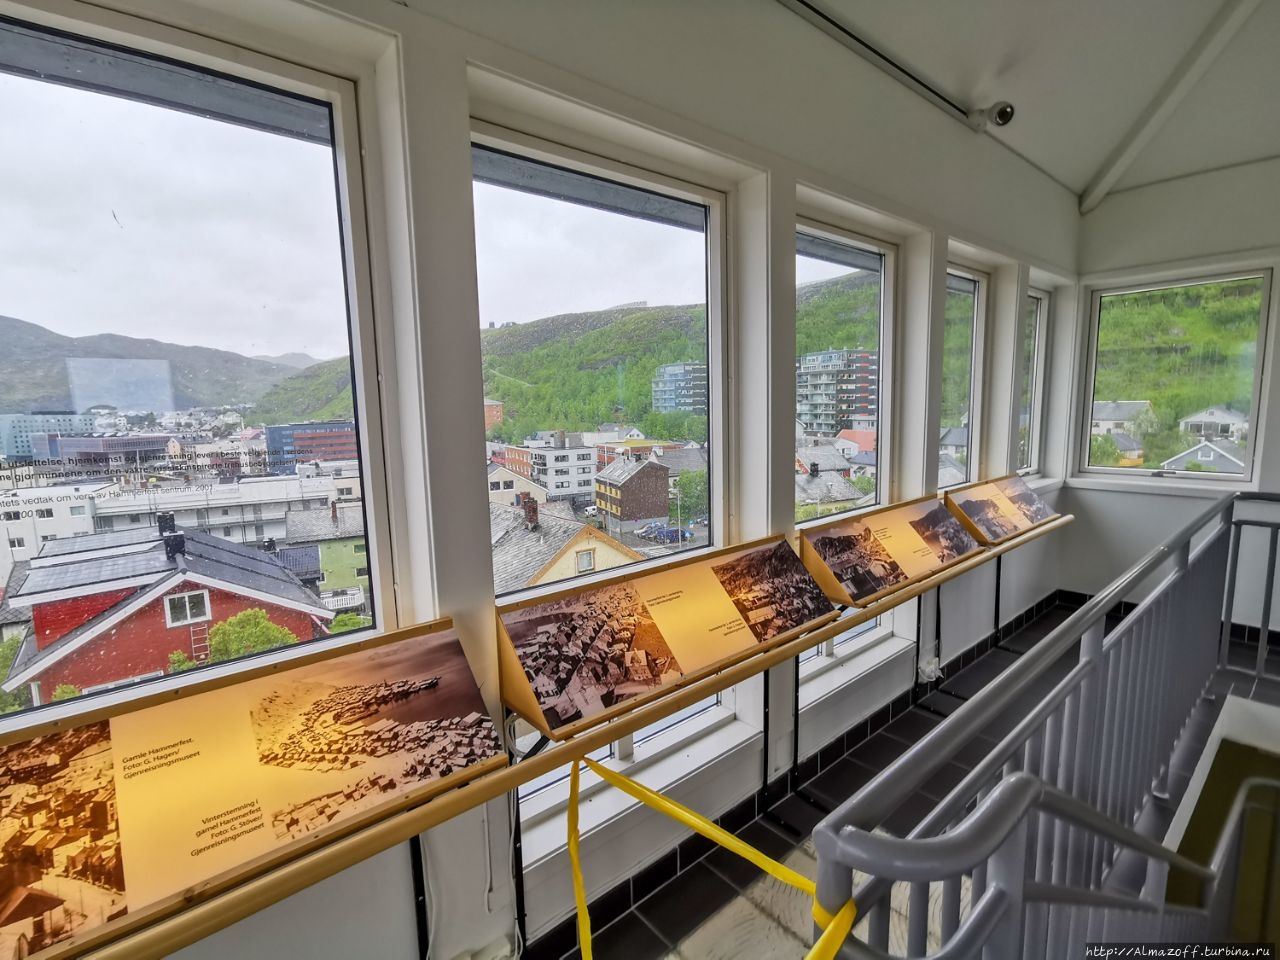 Музей восстановления северных норвежских городов Хаммерфест, Норвегия